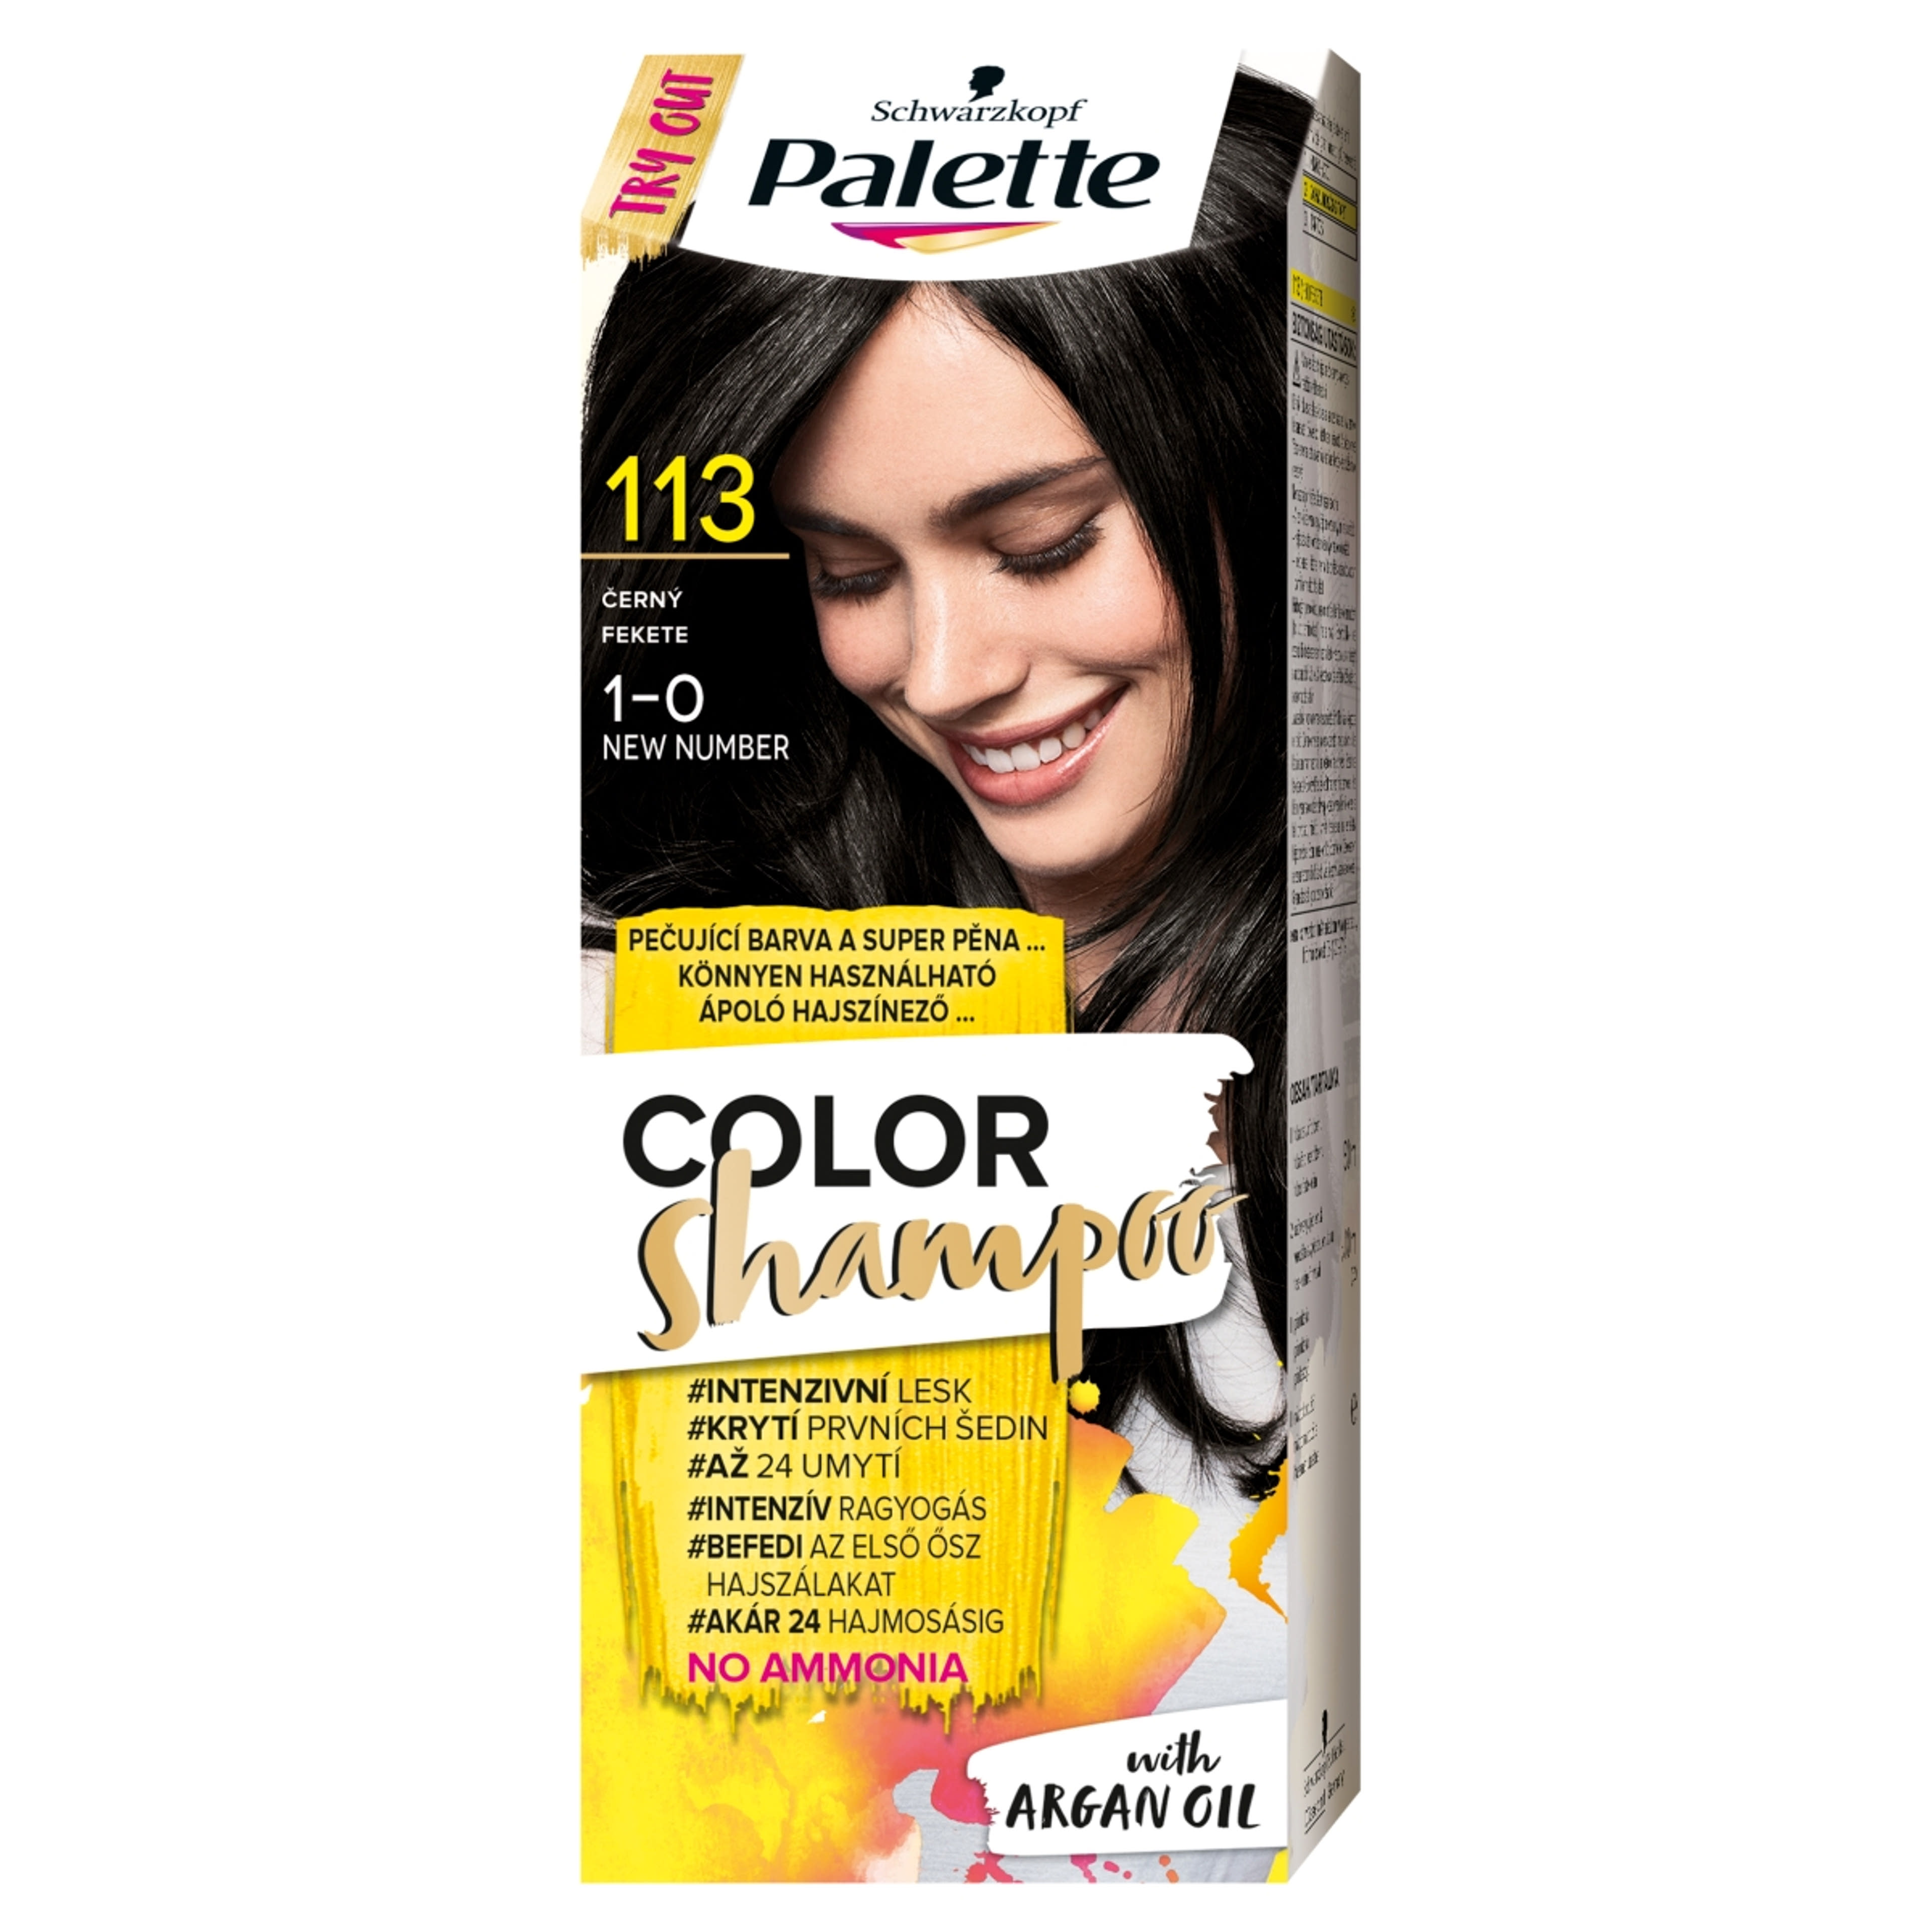 Schwarzkopf Palette Color Shampoo hajfesték 113 fekete - 1 db